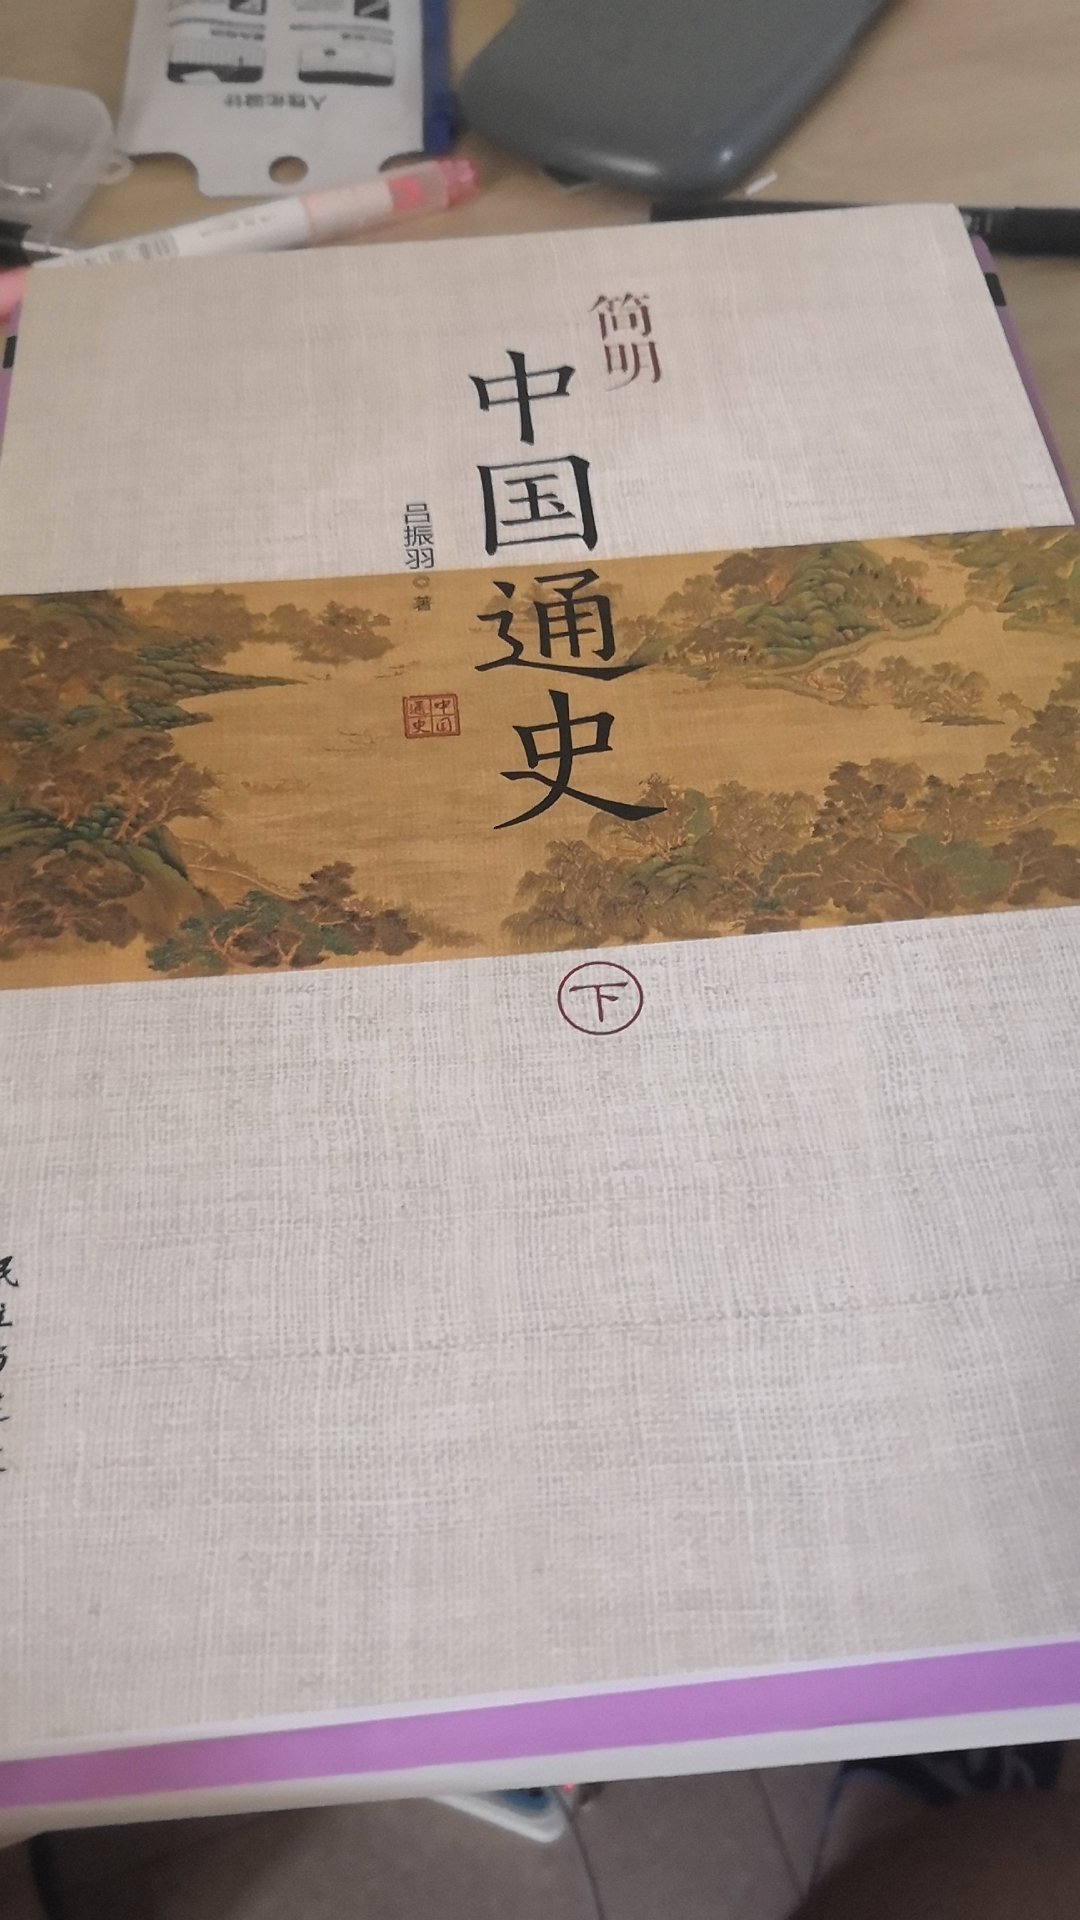 这本书是北大历史系的，中国古代史，这门课程的推荐书目。